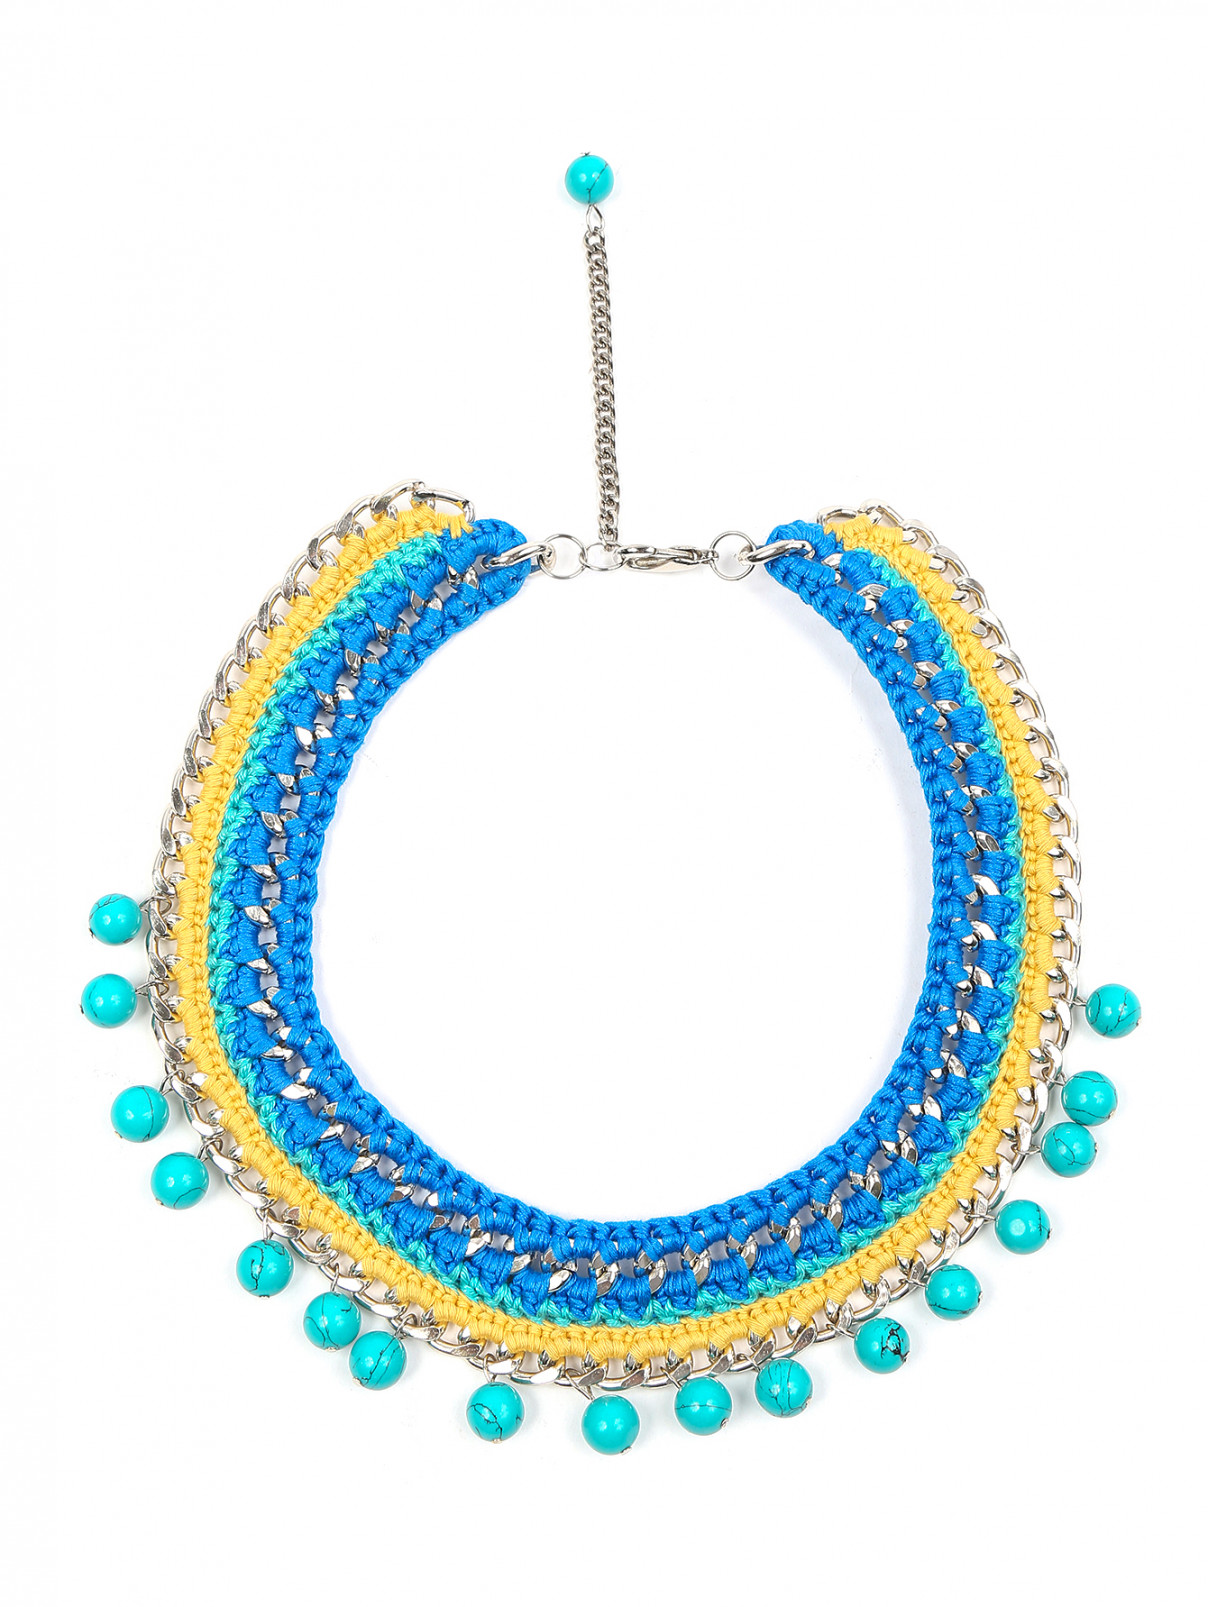 Ожерелье из текстиля и металла с бирюзой Inga Kazumyan  –  Общий вид  – Цвет:  Мультиколор